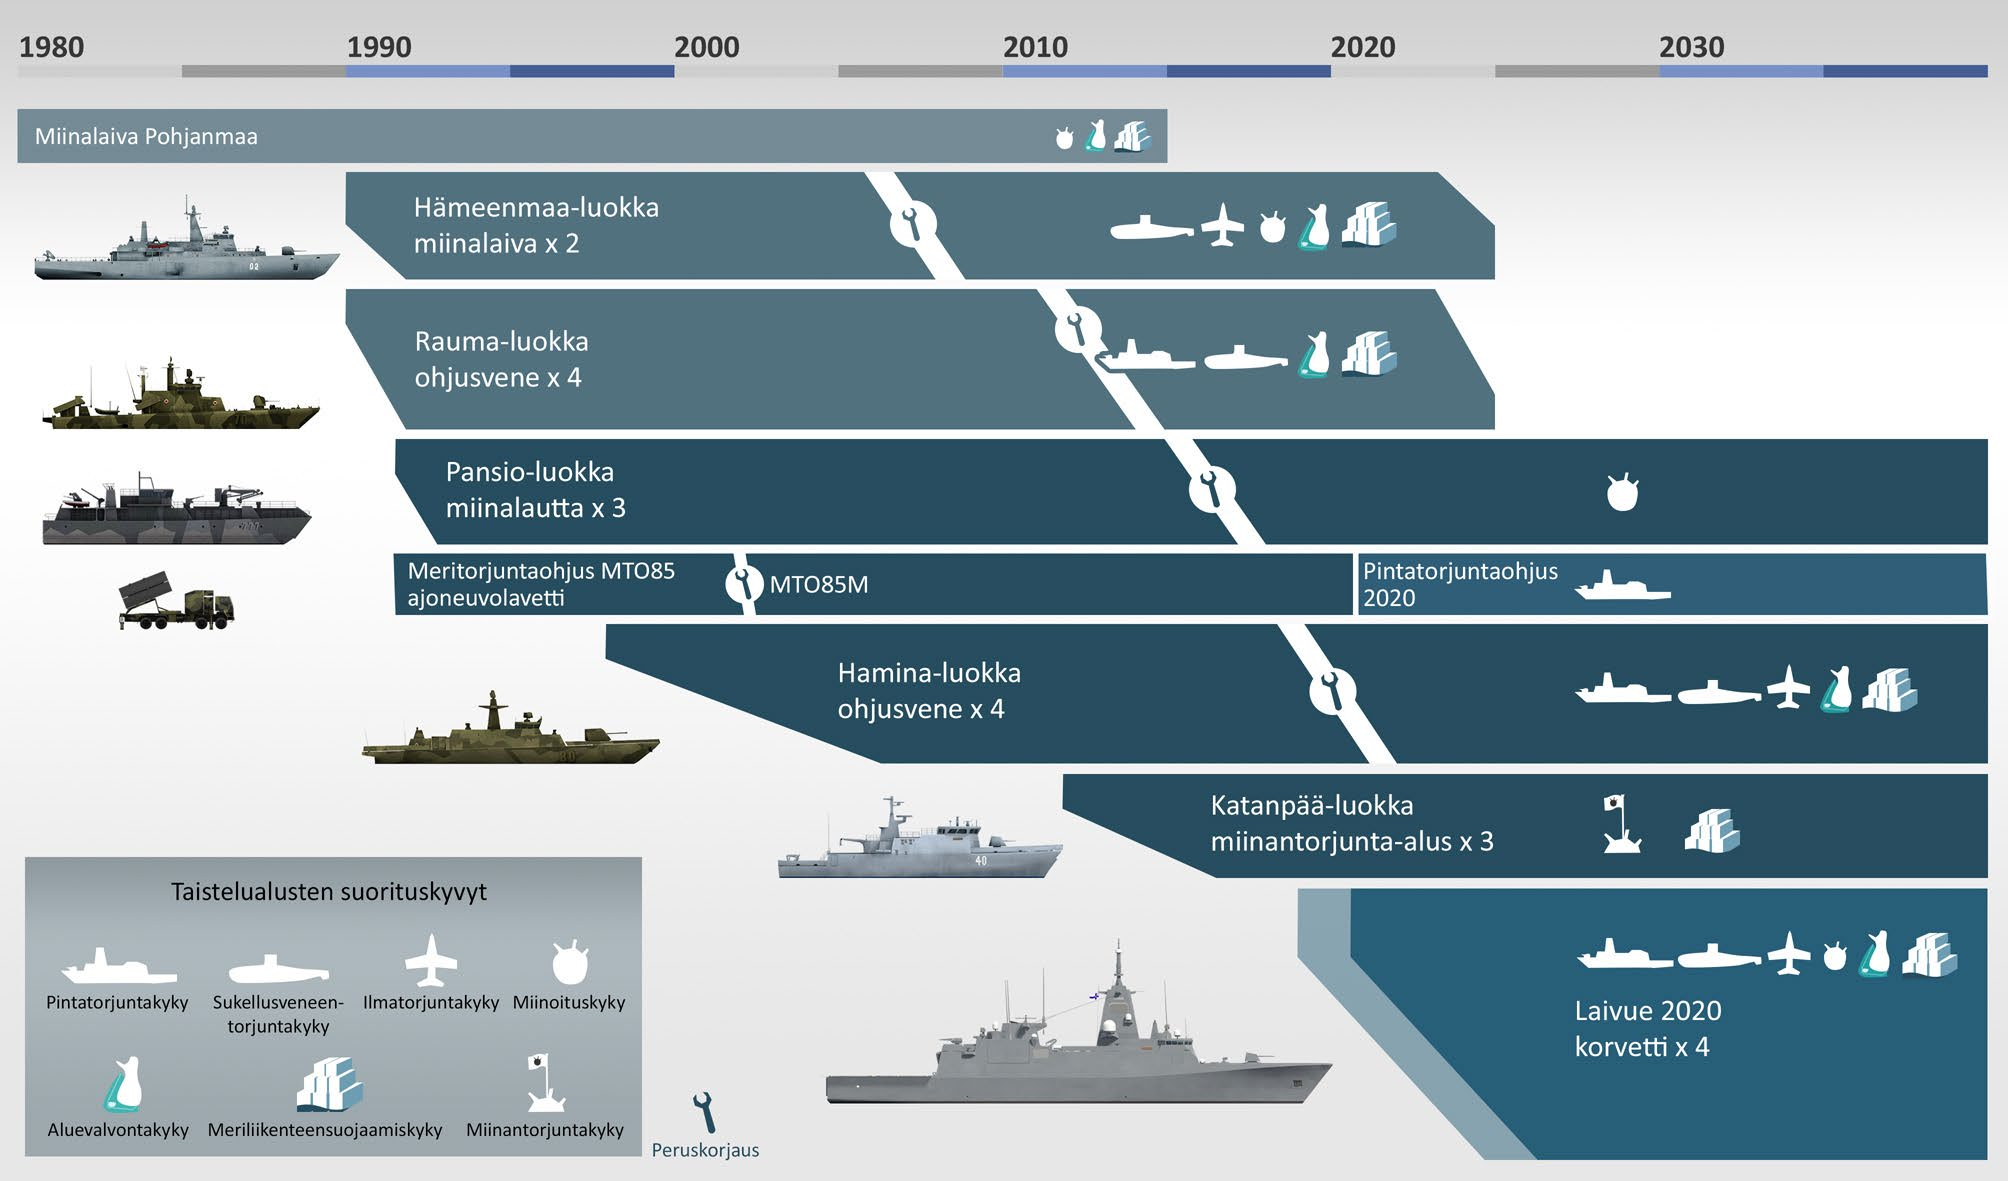 Laivue 2020 Laivue 2020 -hankkeen alukset muodostavat tulevaisuuden puolustusvoimien merellisen suorituskyvyn rungon. Niiden suorituskyvyn on suunniteltu olevan käytössä 2050-luvulle asti.